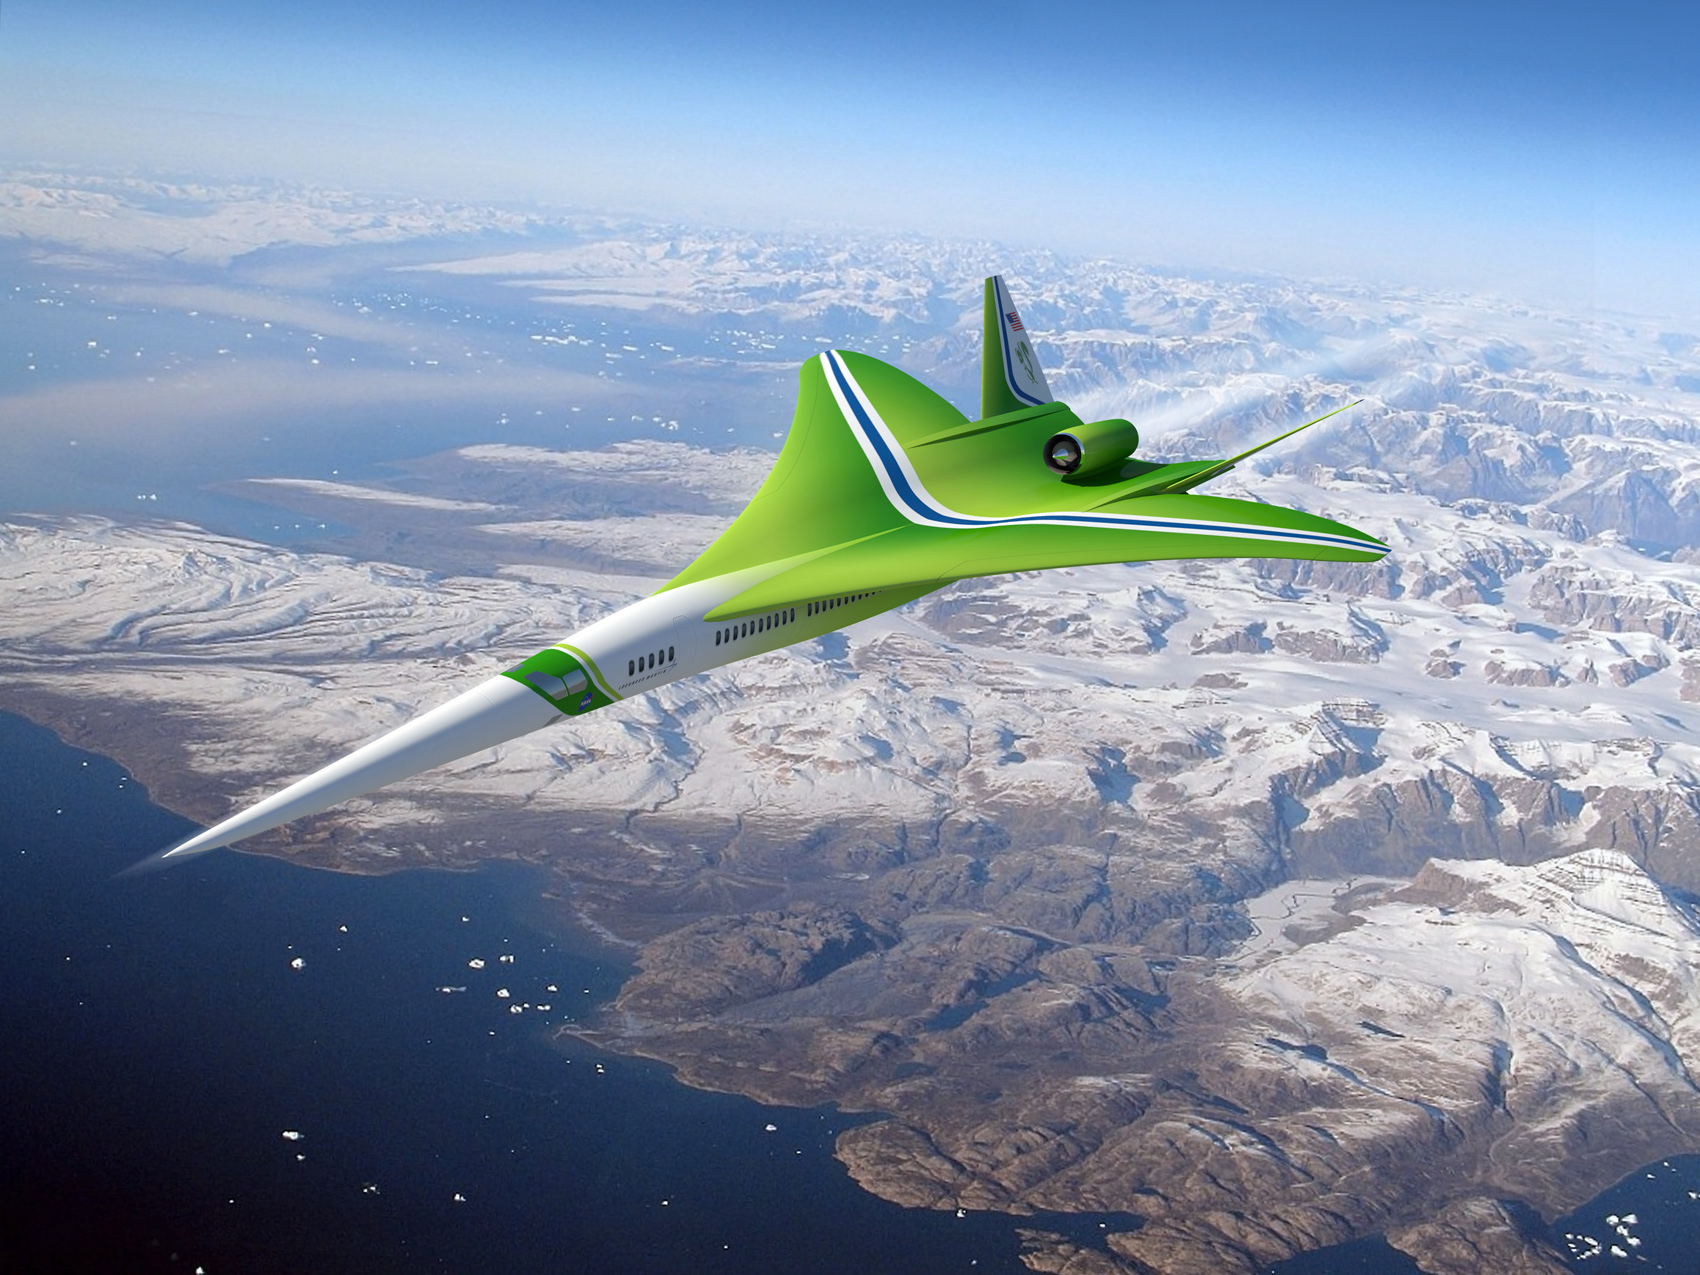 A Lockheed N2 koncepciója abban is reálisabbnak tűnik, hogy a pilótafülkének nincs ablaka...